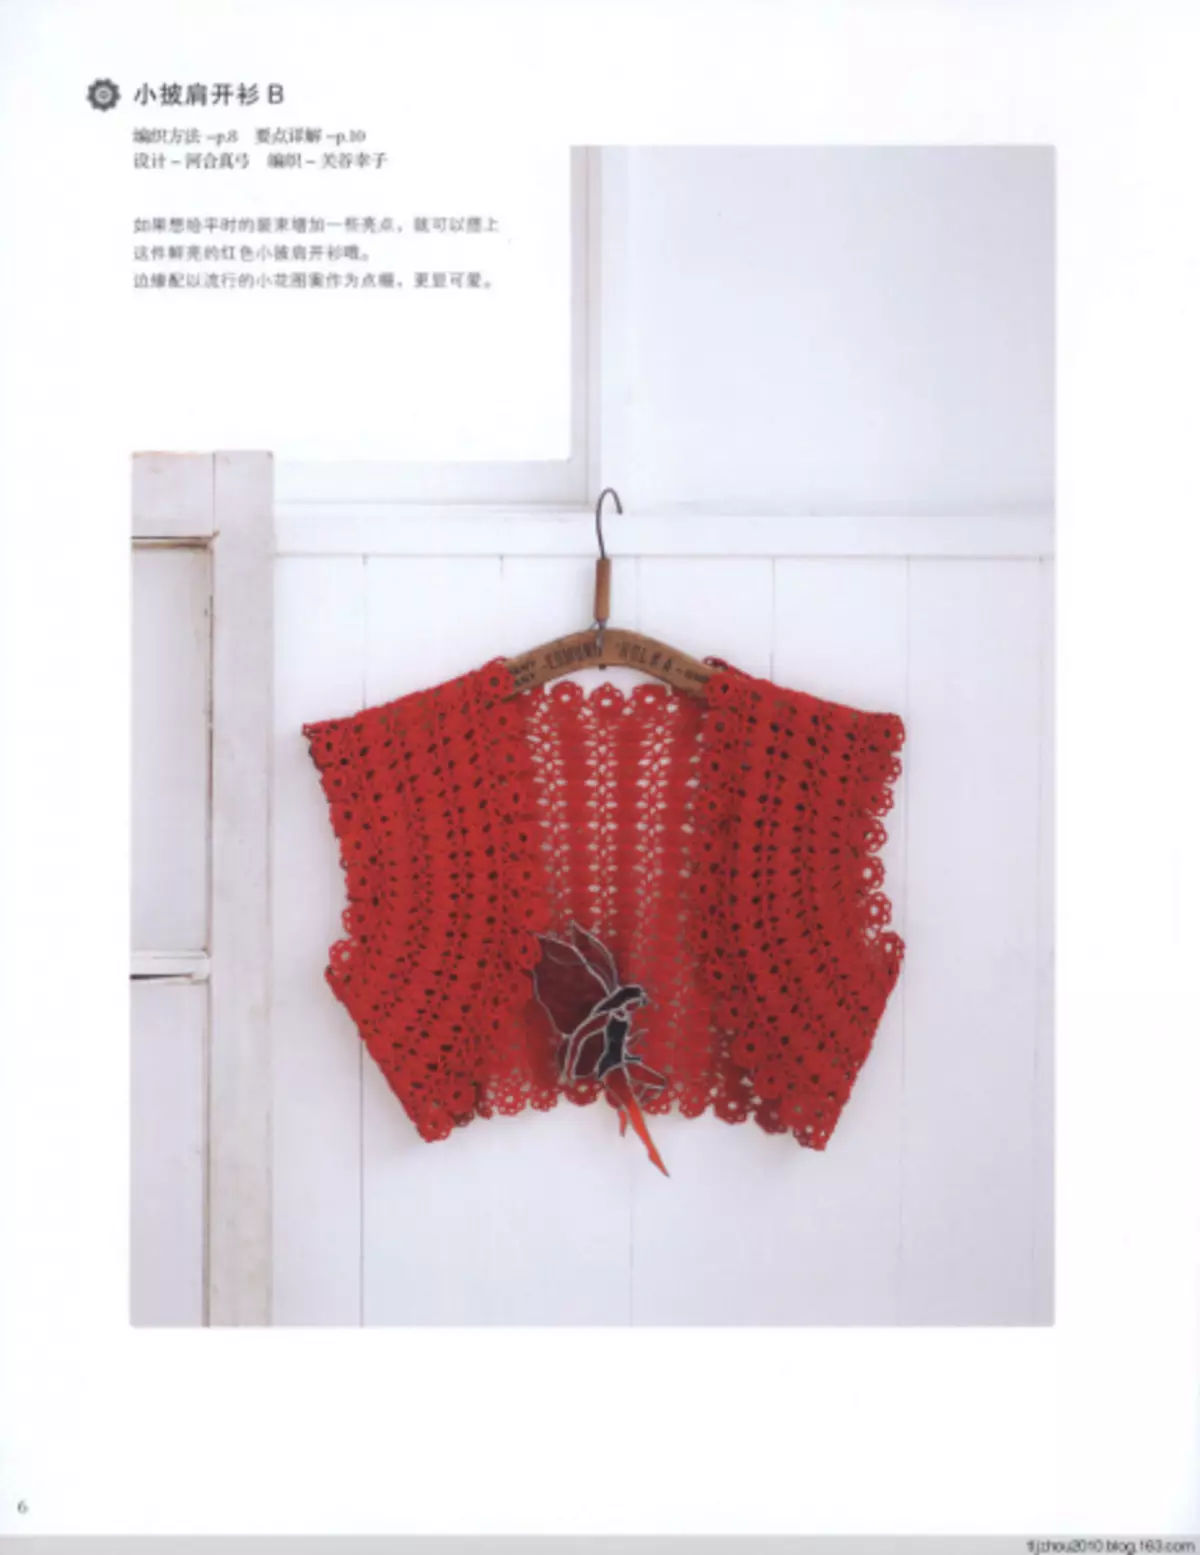 BOLERO, Shawl ແລະ Crochet Cape